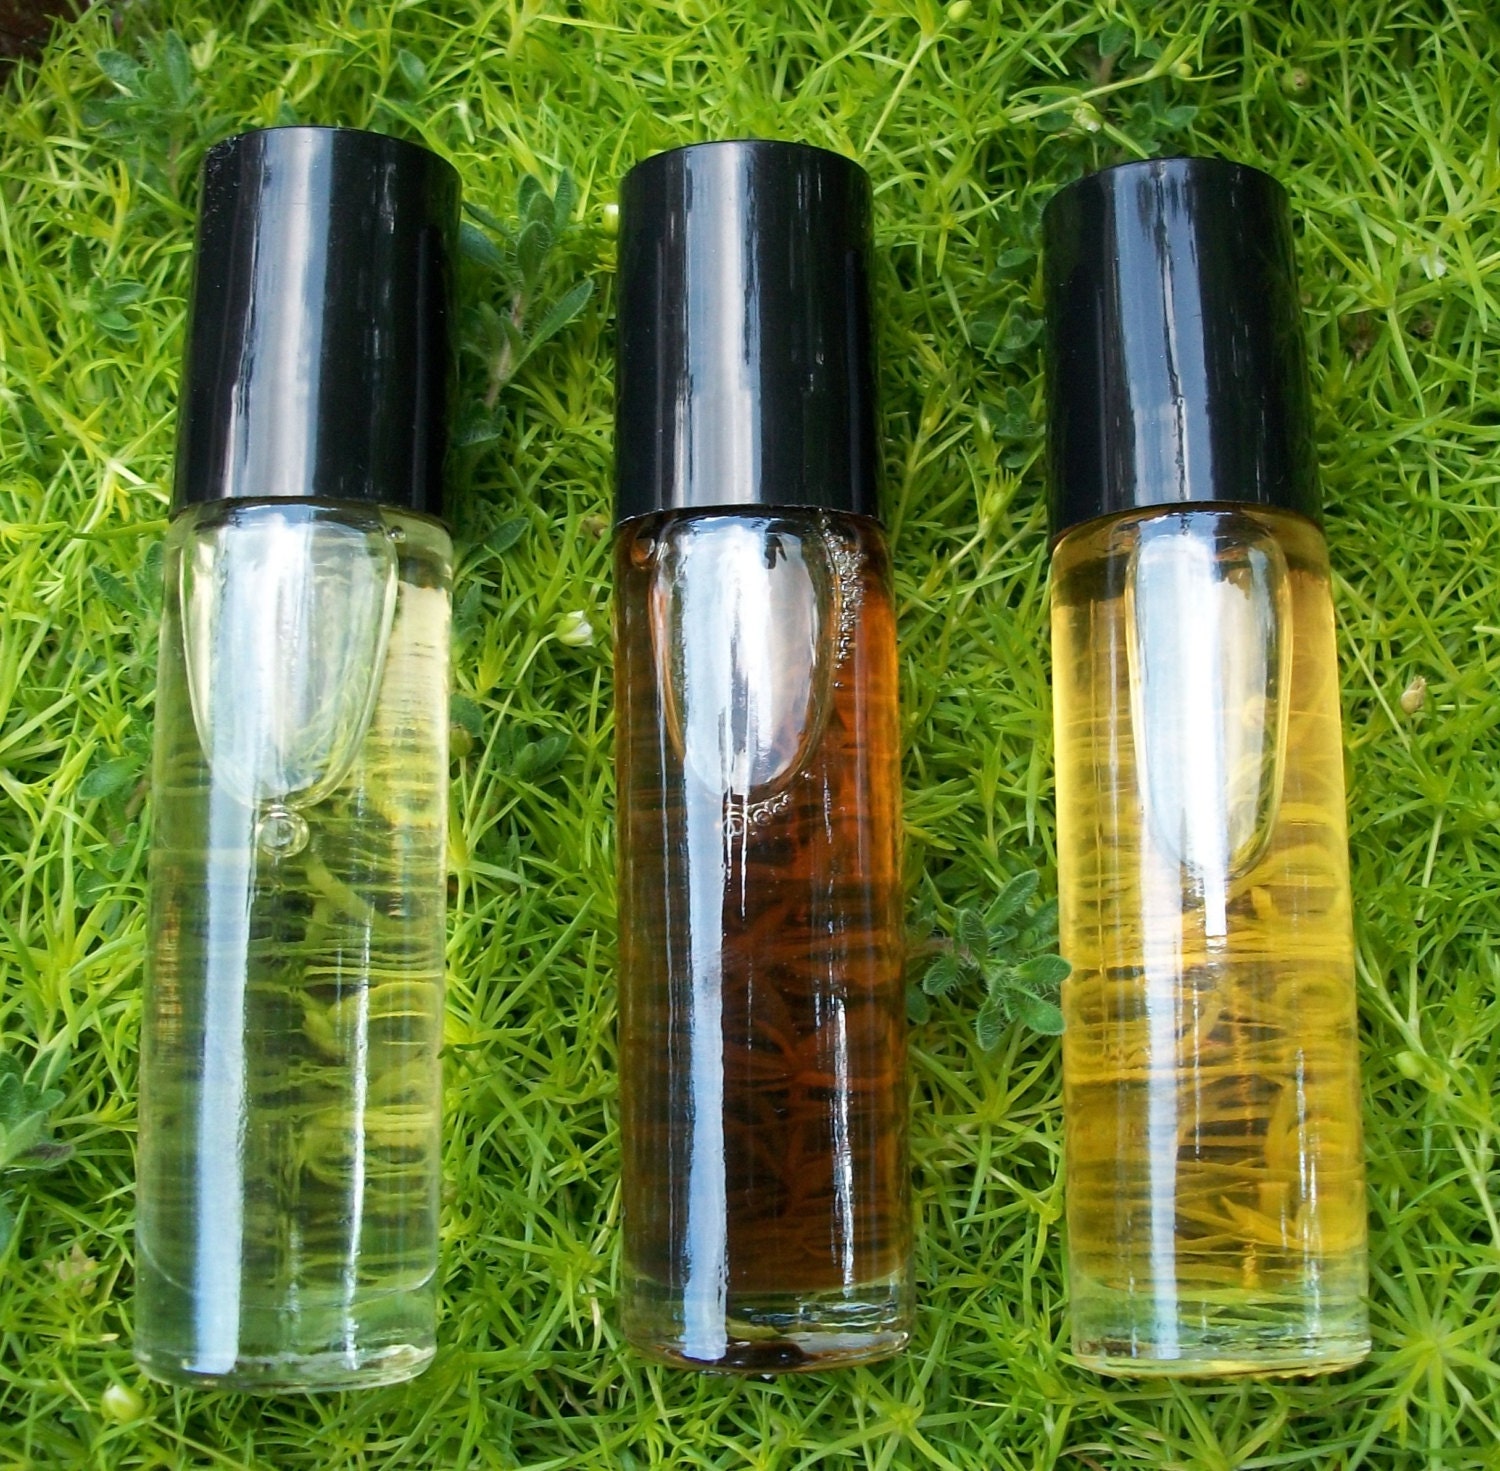 Sensual Vanilla Fragrance Oil - 16 Ounces